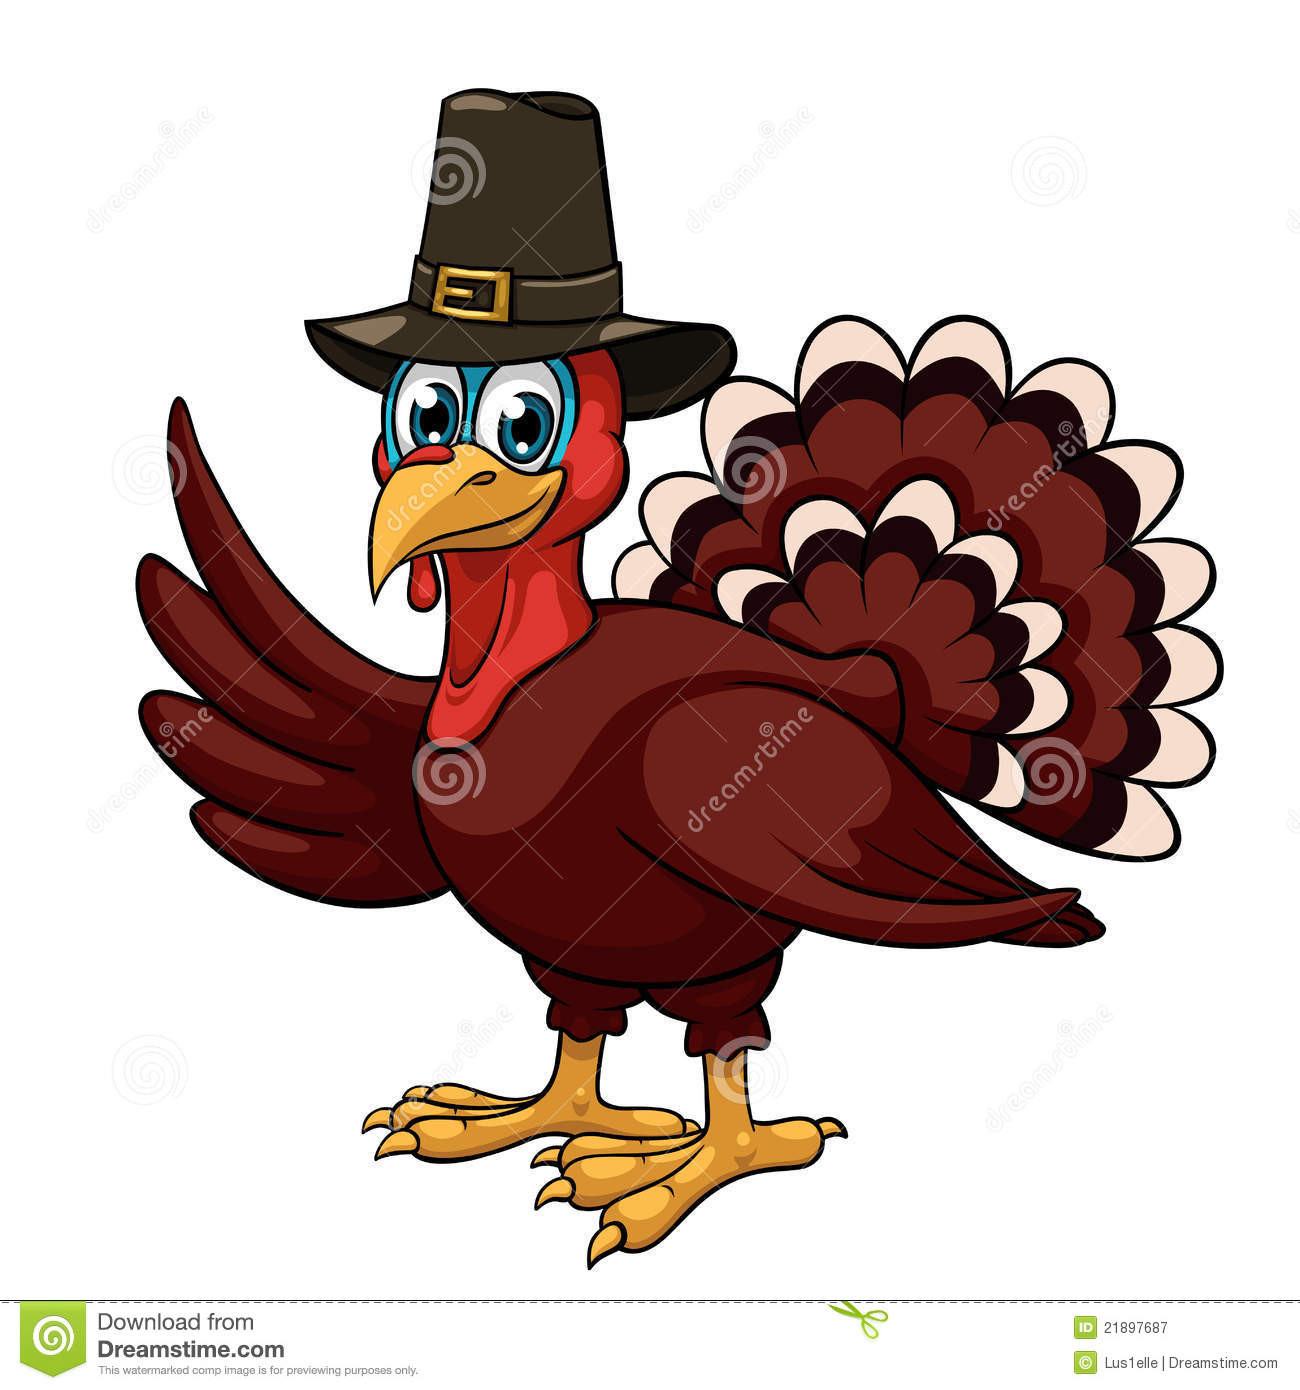 Images Of Thanksgiving Turkey
 Thanksgiving turkey stock vector Illustration of bird